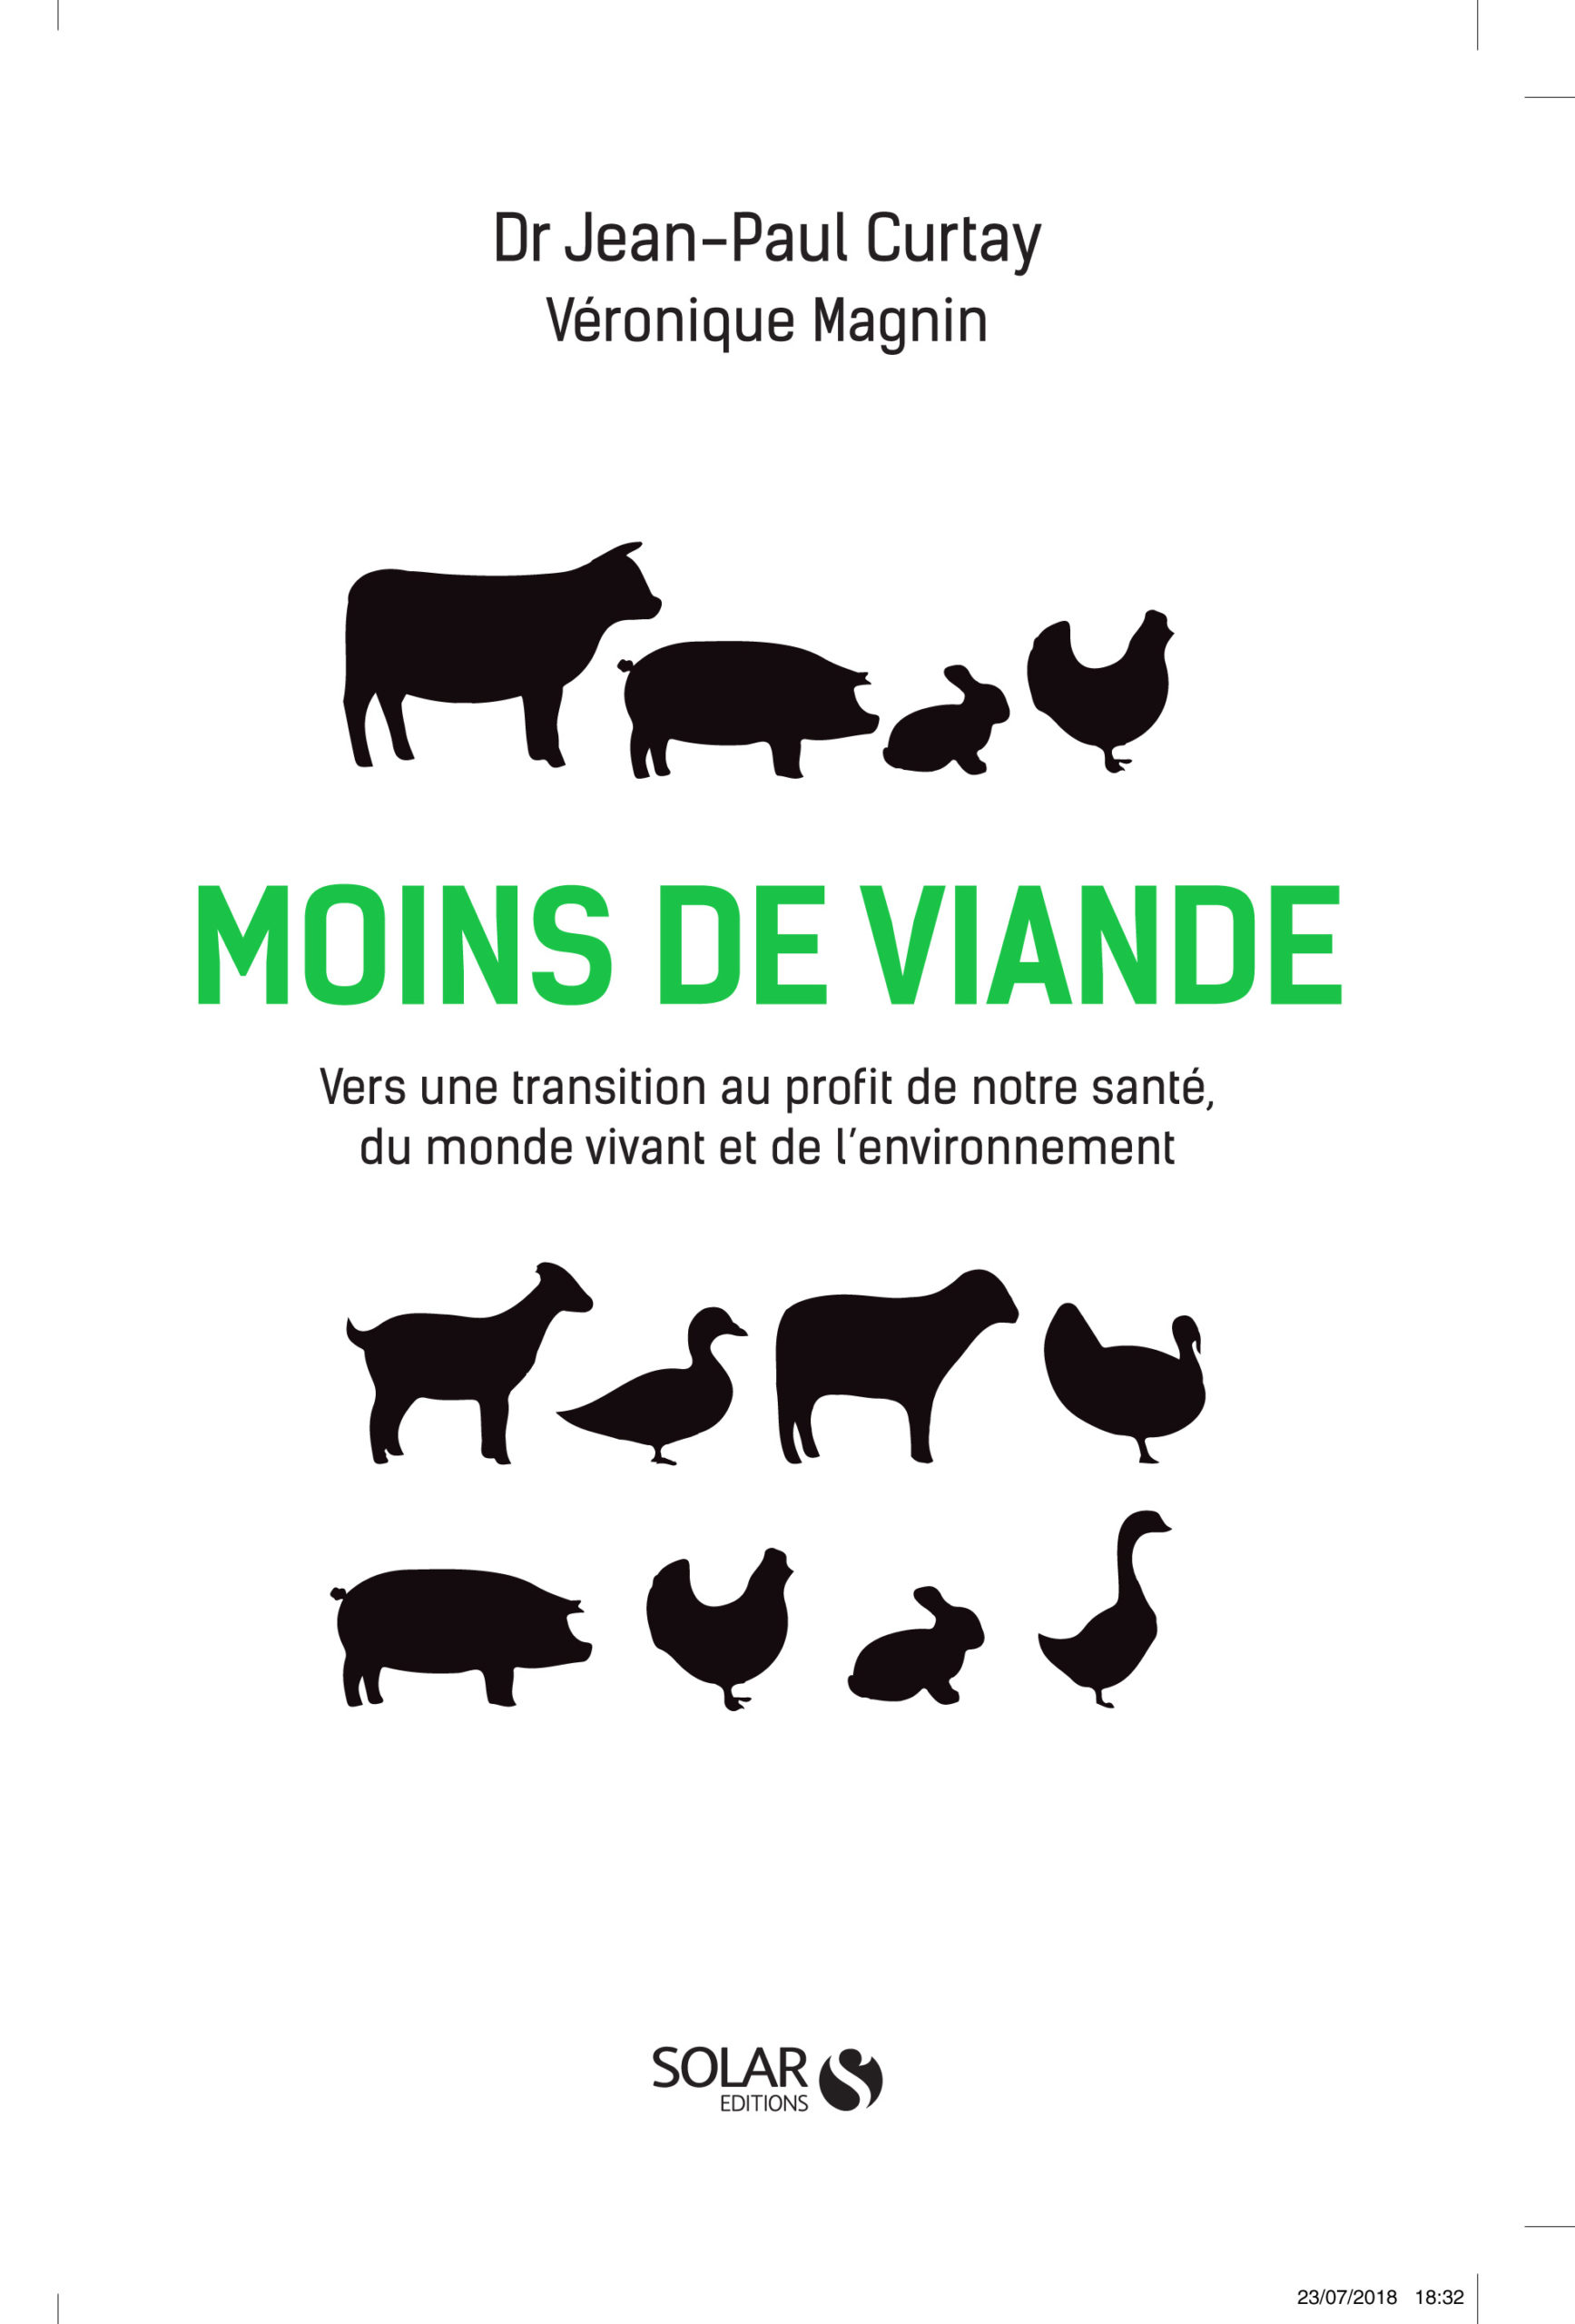 MOINS DE VIANDE – TRANSITION AU PROFIT DE NOTRE SANTÉ, DU MONDE ANIMAL ET DE L’ENVIRONNEMENT